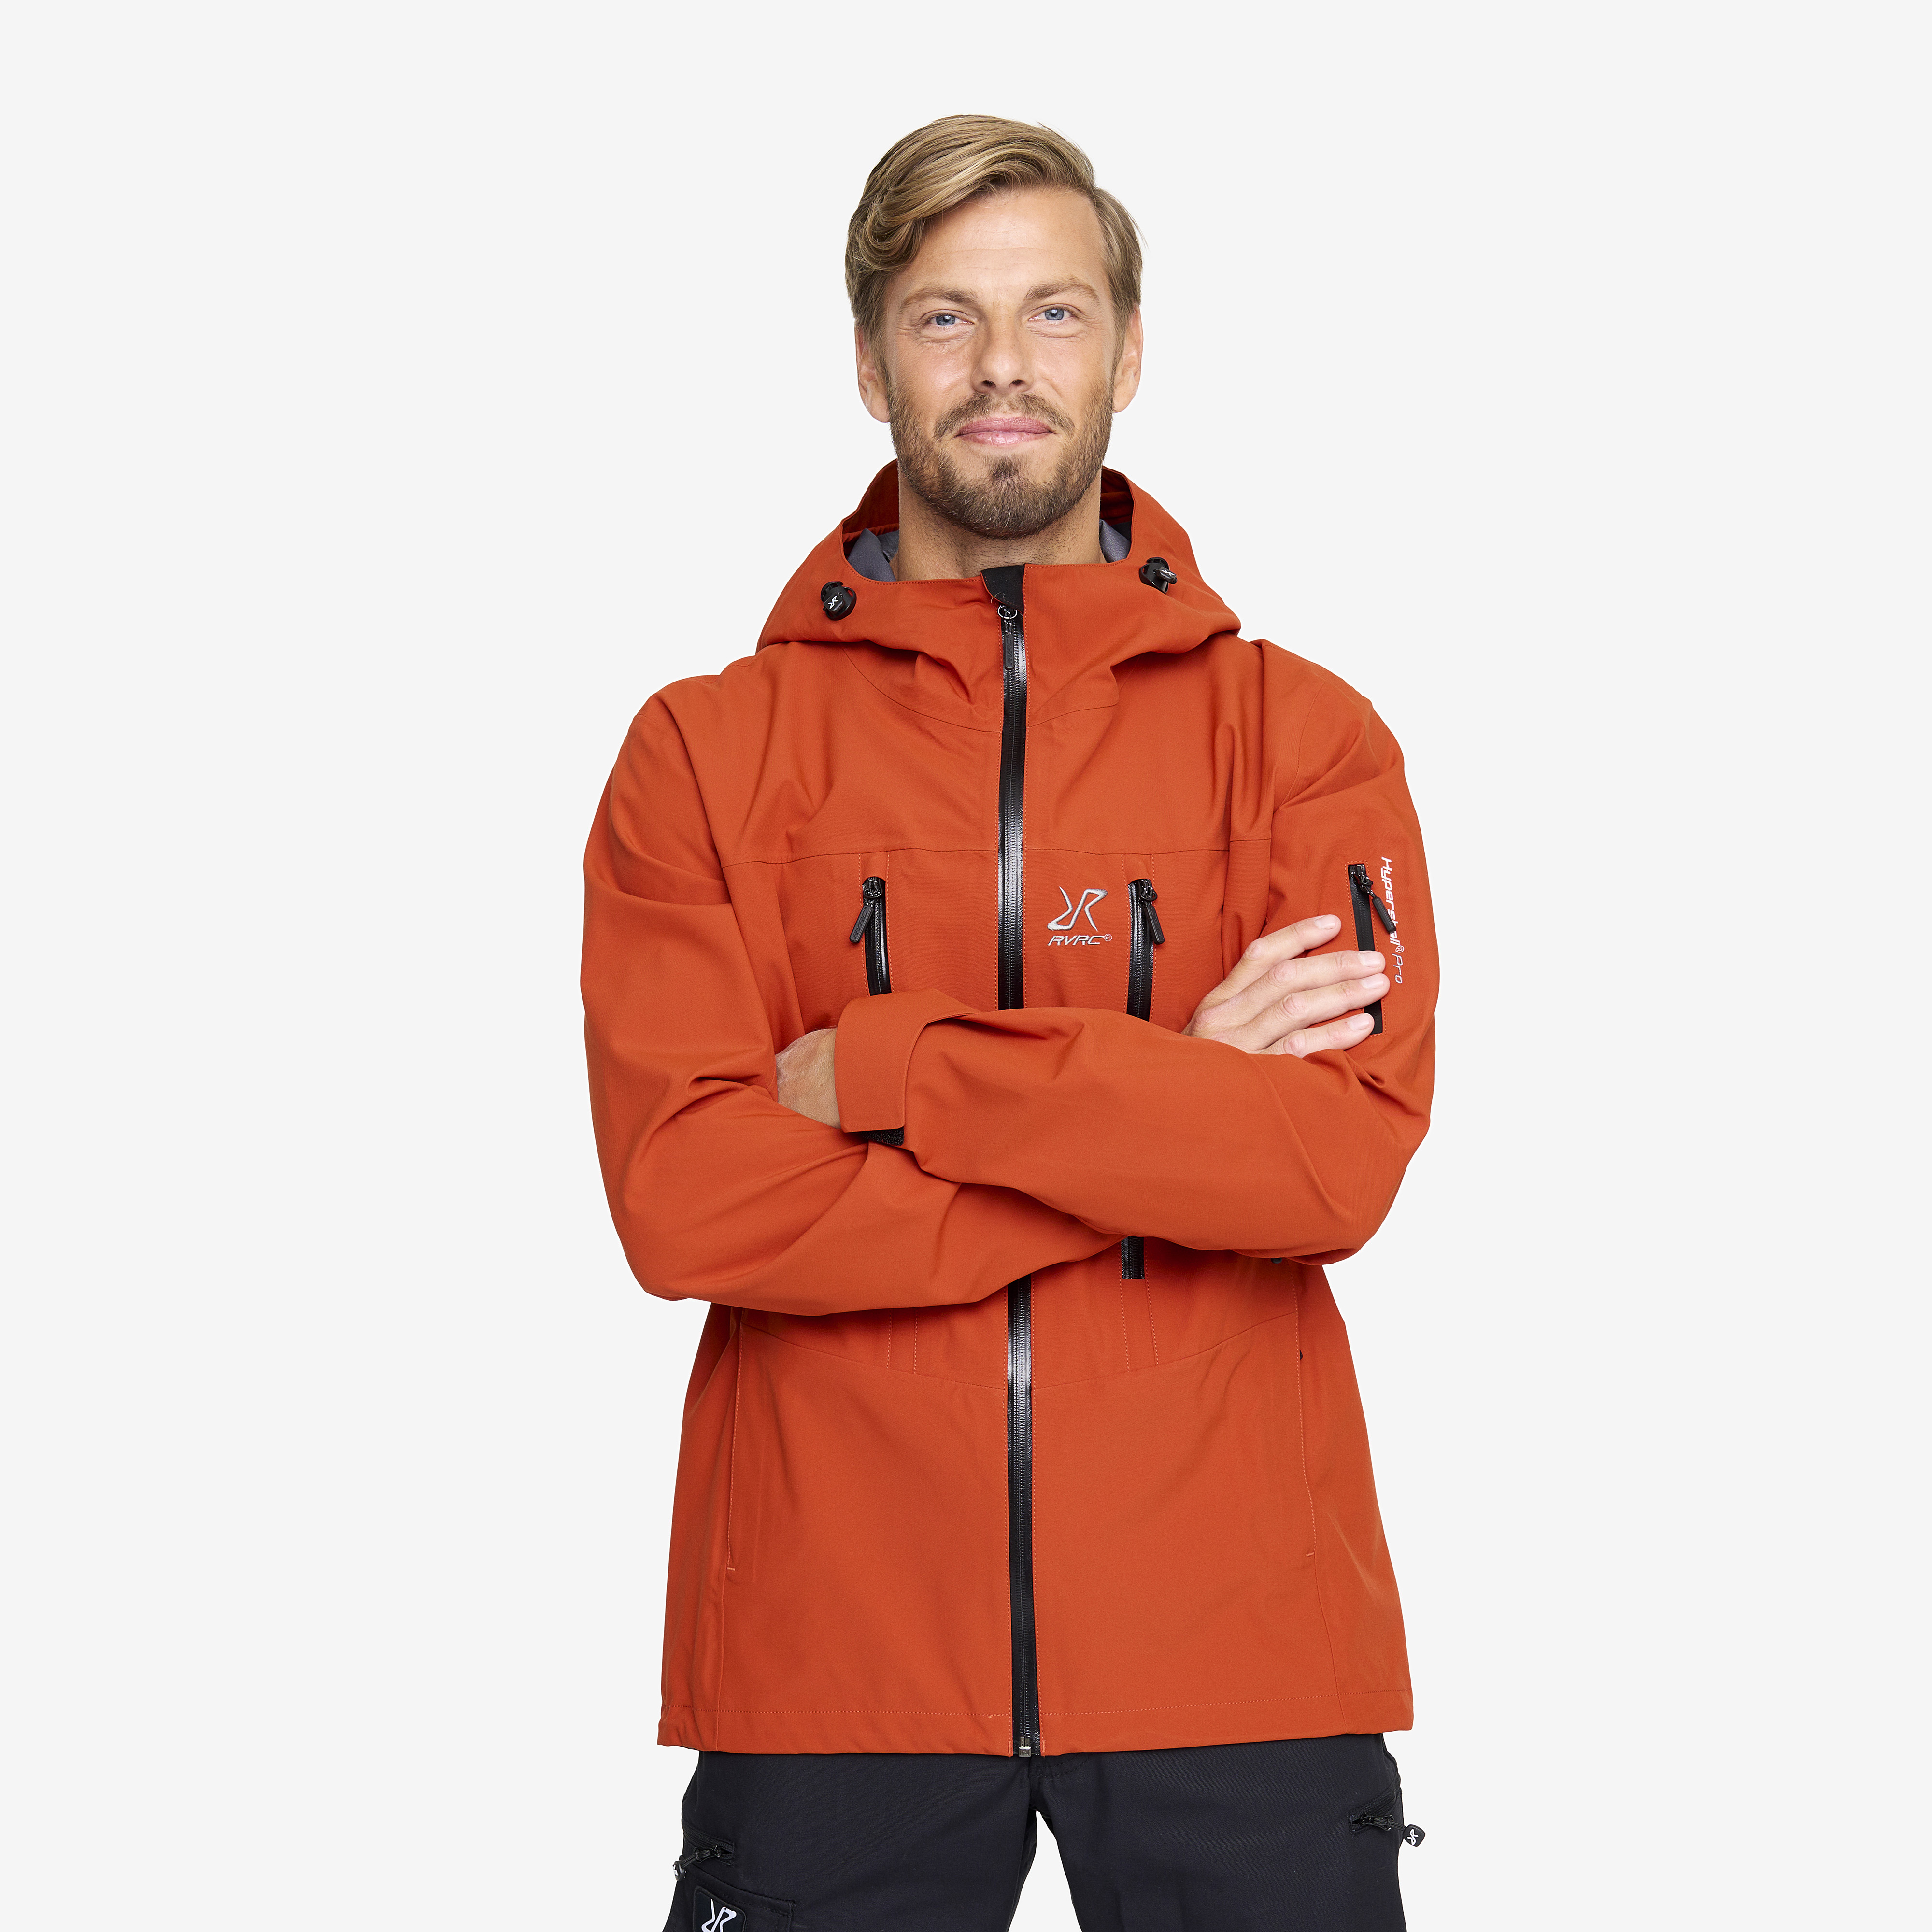 Whisper waterproof jacket for men in orange